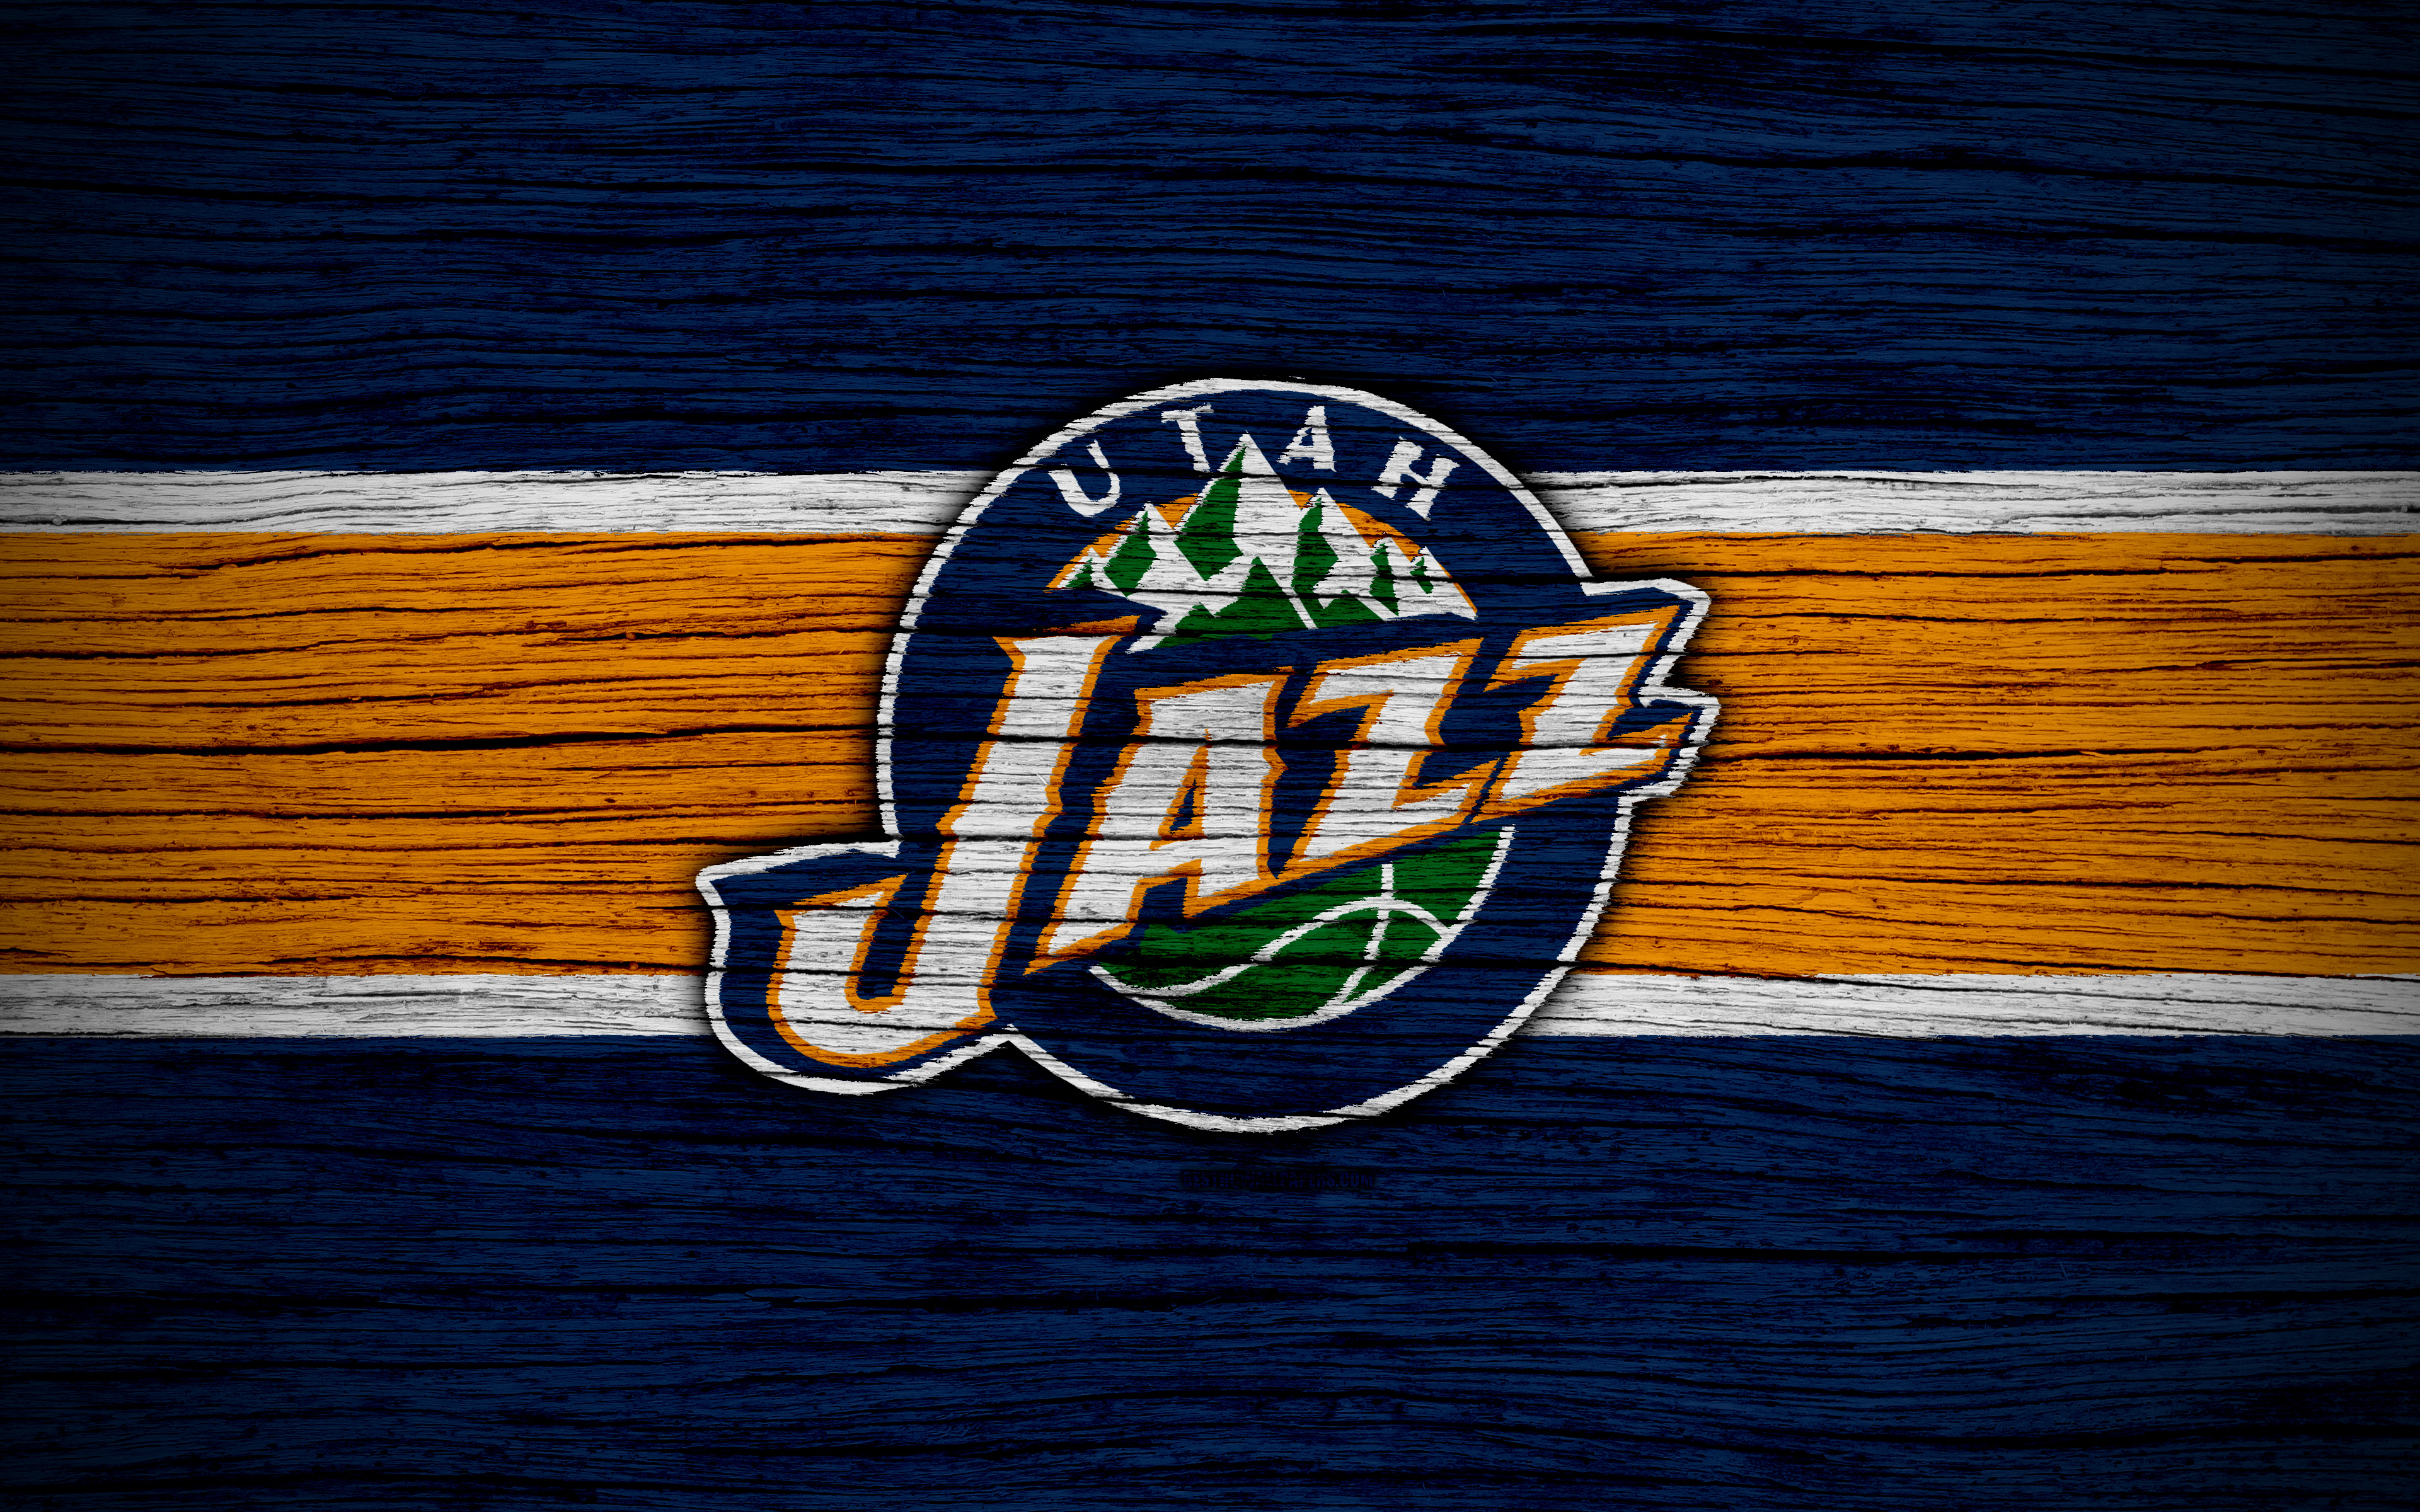 Sports Utah Jazz HD Wallpaper | Background Image